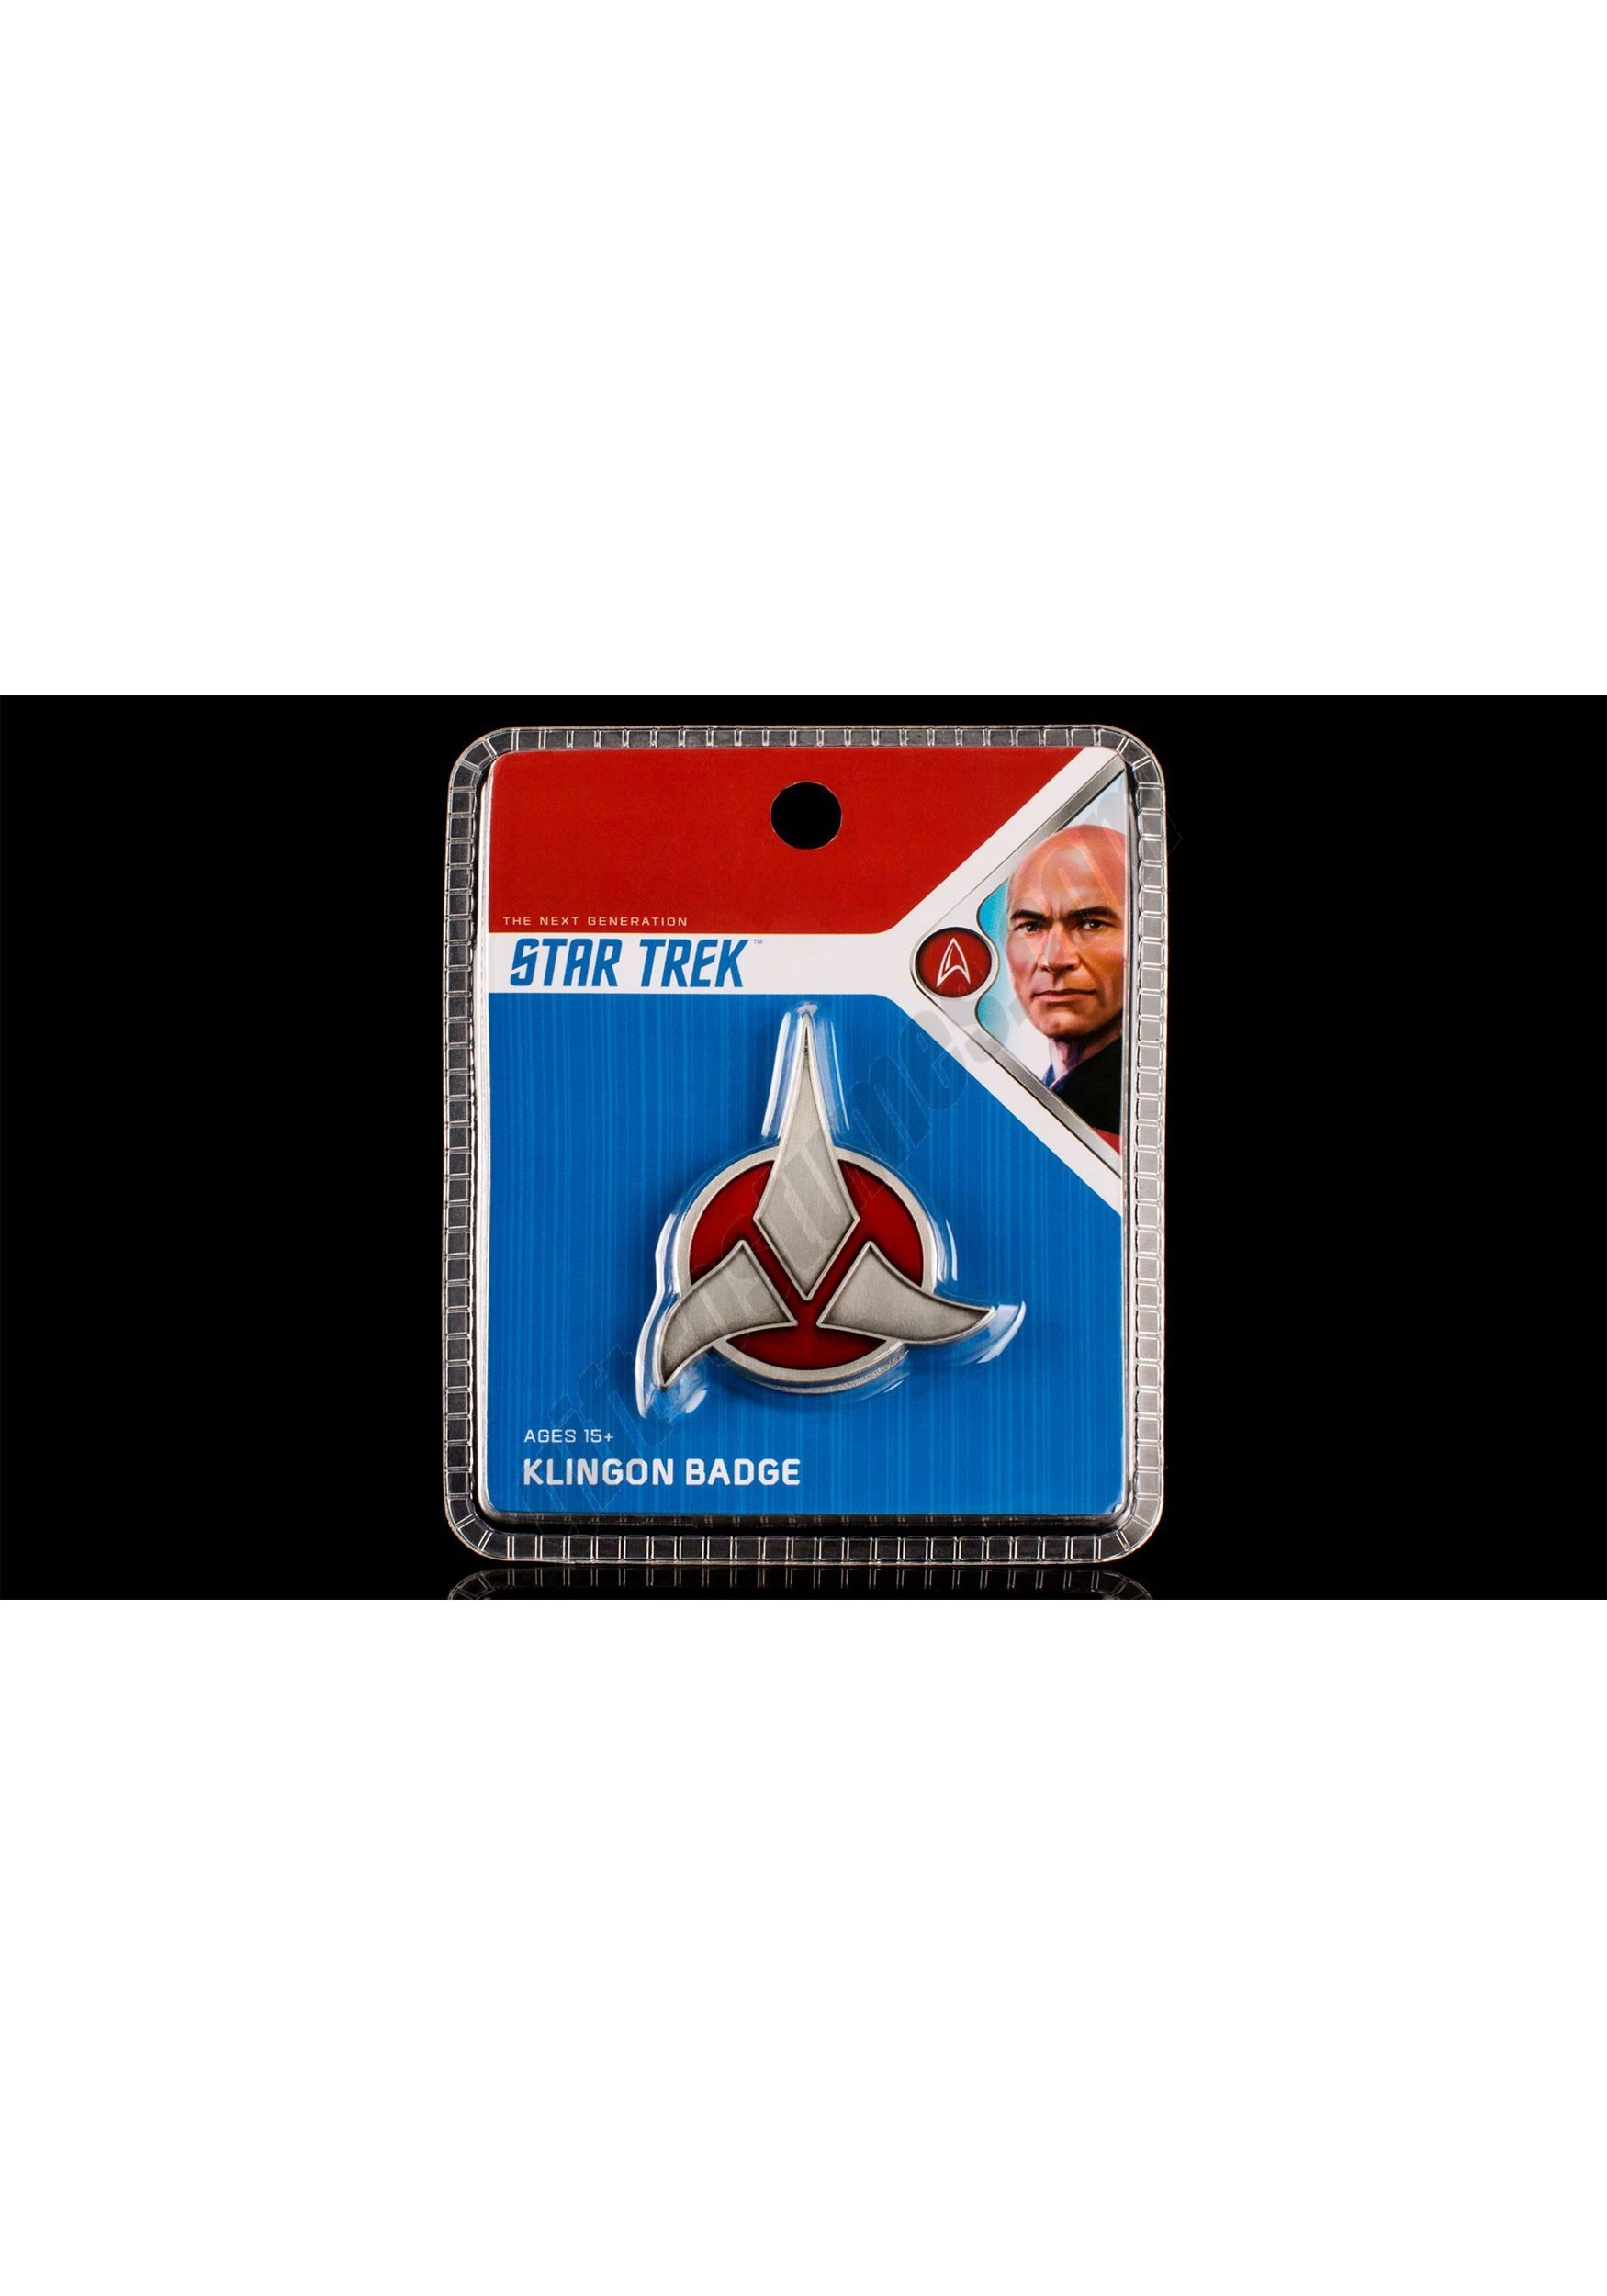 The Klingon Emblem Badge Promotions - The Klingon Emblem Badge Promotions